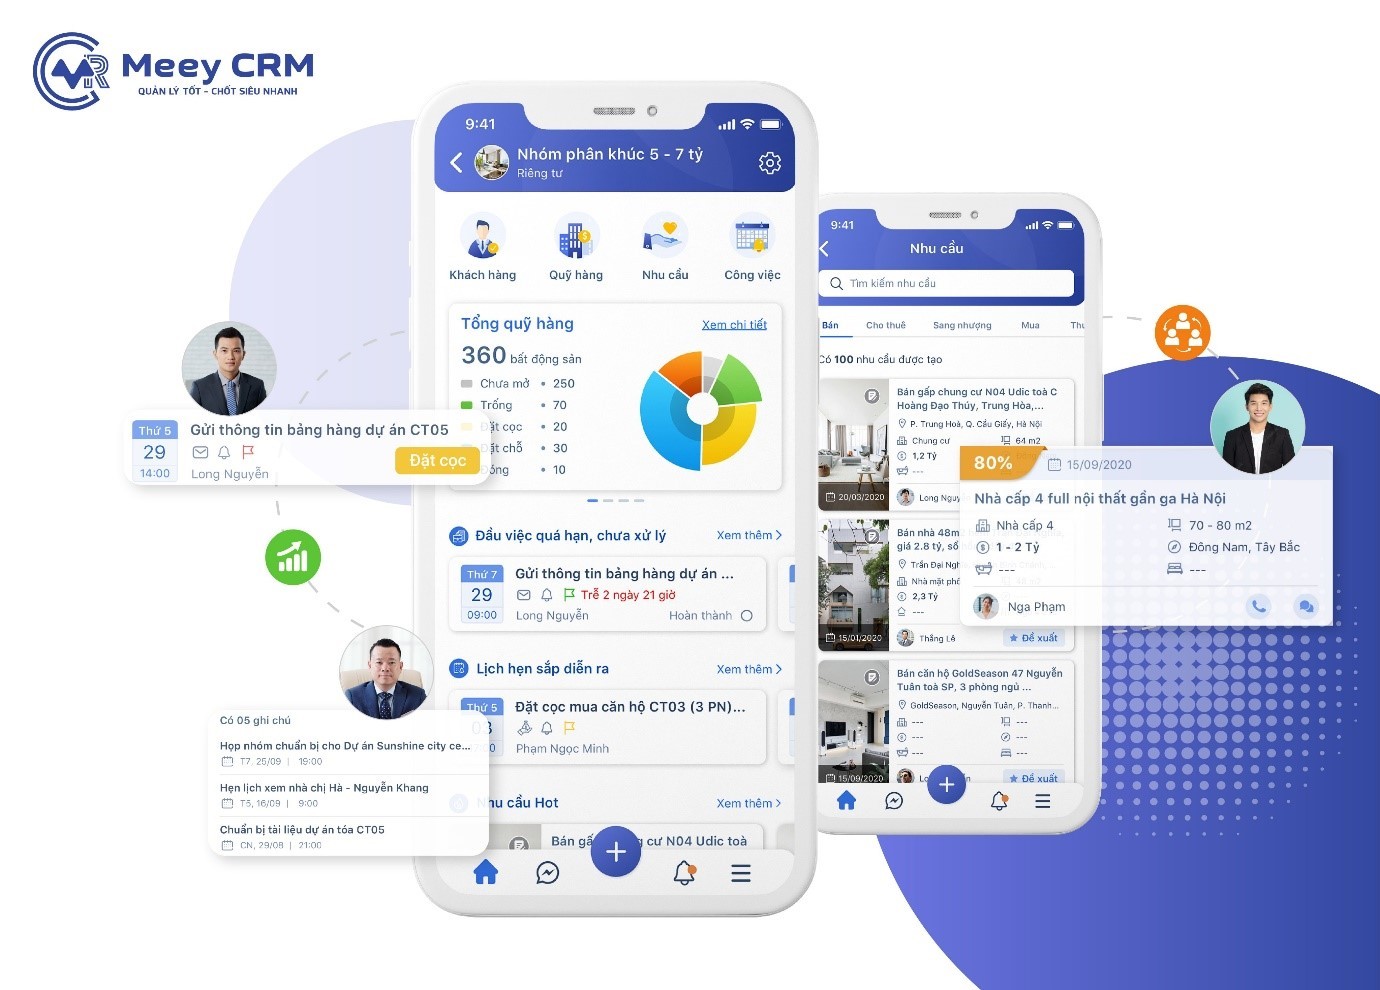 
Meey CRM - Công cụ đắc lực giúp nhà môi giới và các sàn giao dịch bất động sản quản trị khách hàng, nguồn hàng…
